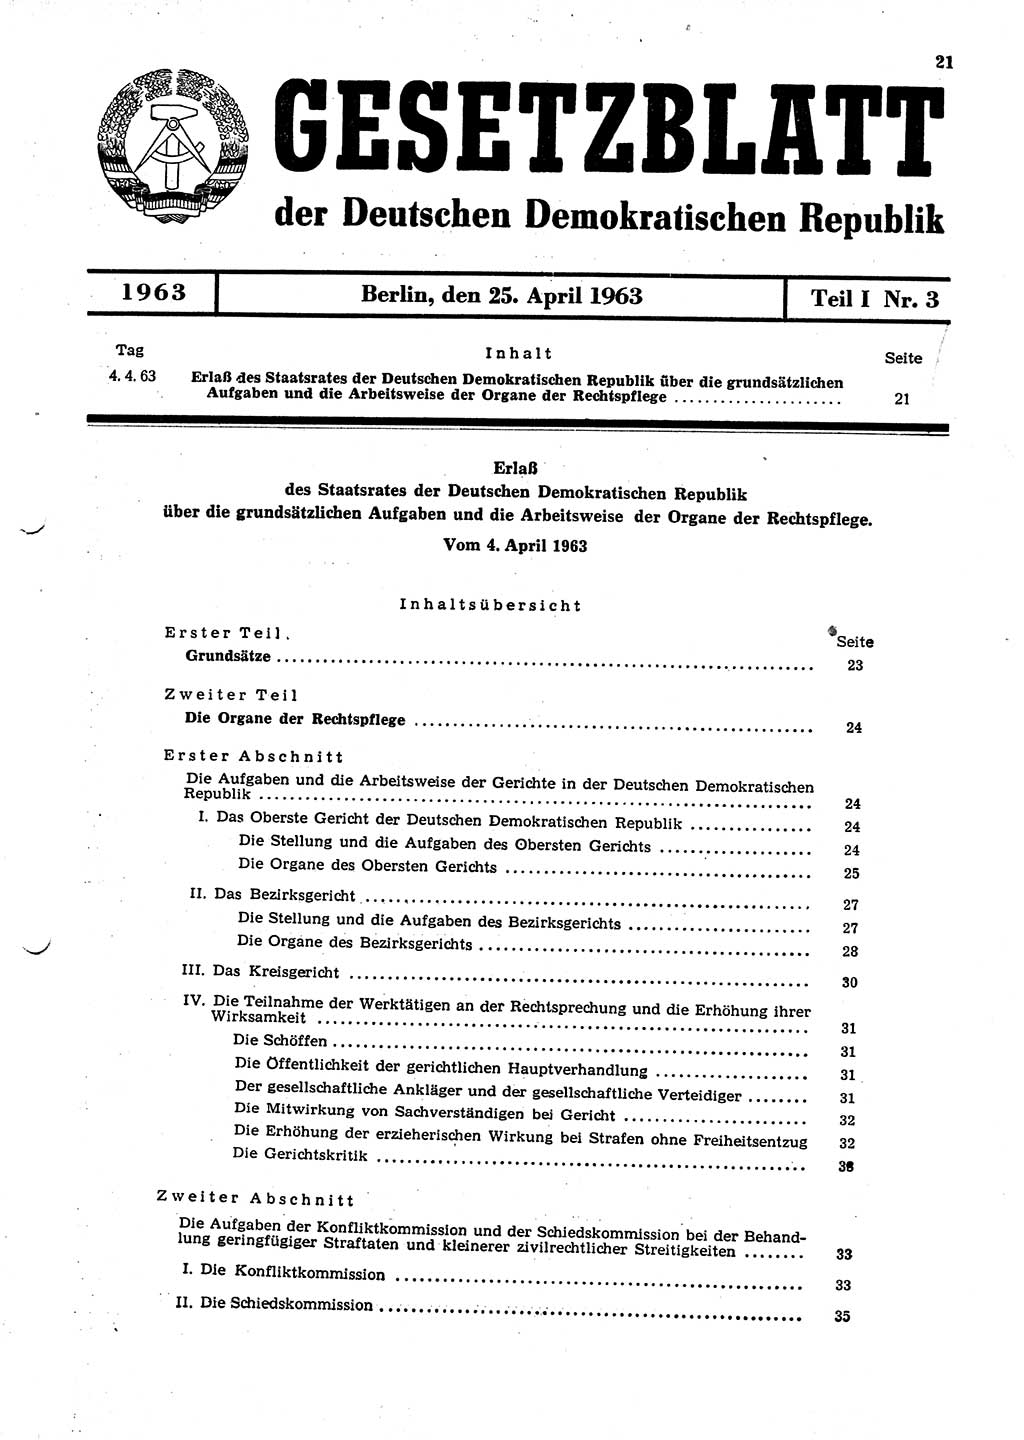 Gesetzblatt (GBl.) der Deutschen Demokratischen Republik (DDR) Teil Ⅰ 1963, Seite 21 (GBl. DDR Ⅰ 1963, S. 21)